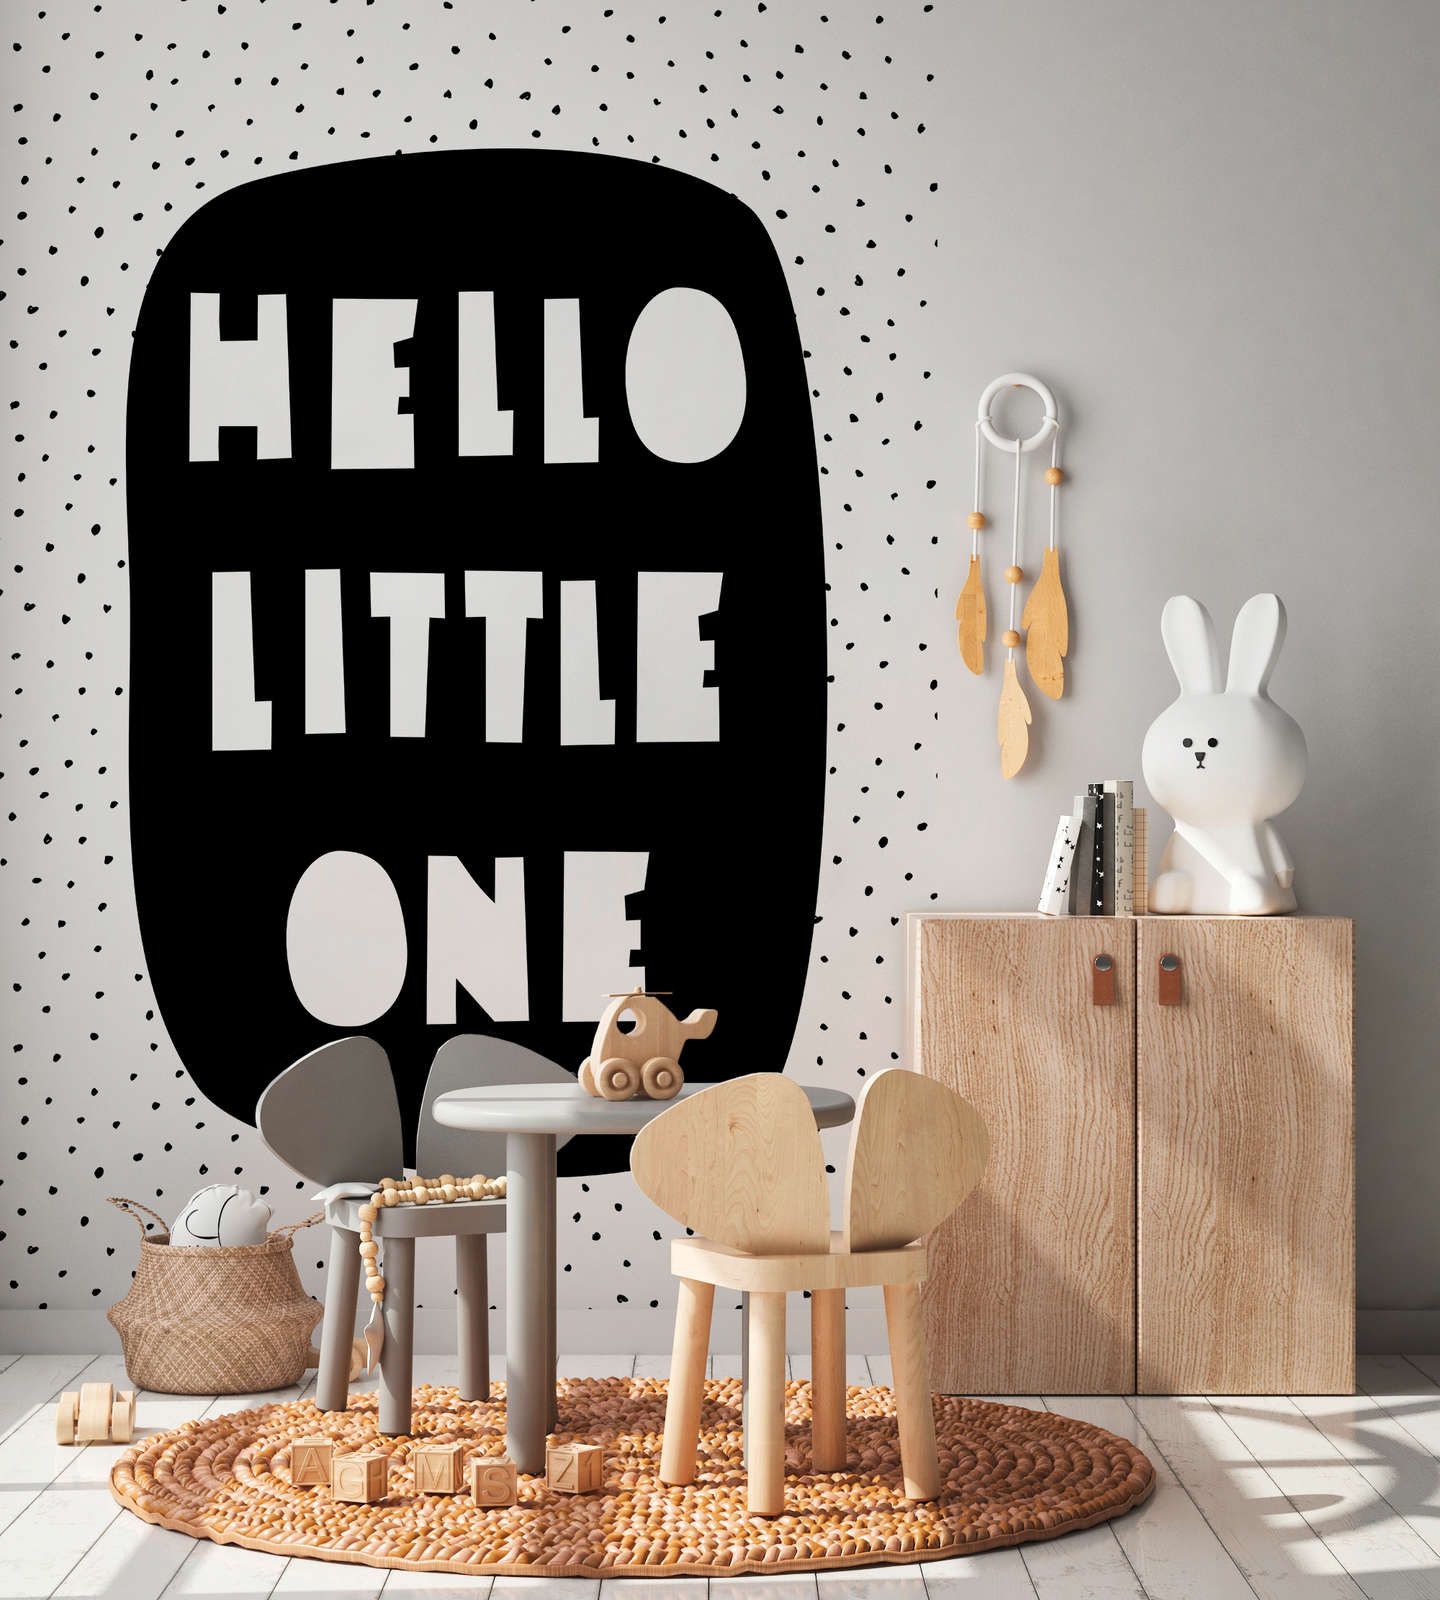             Digital behang voor de kinderkamer met "Hello Little One" opschrift - structuurvlies
        